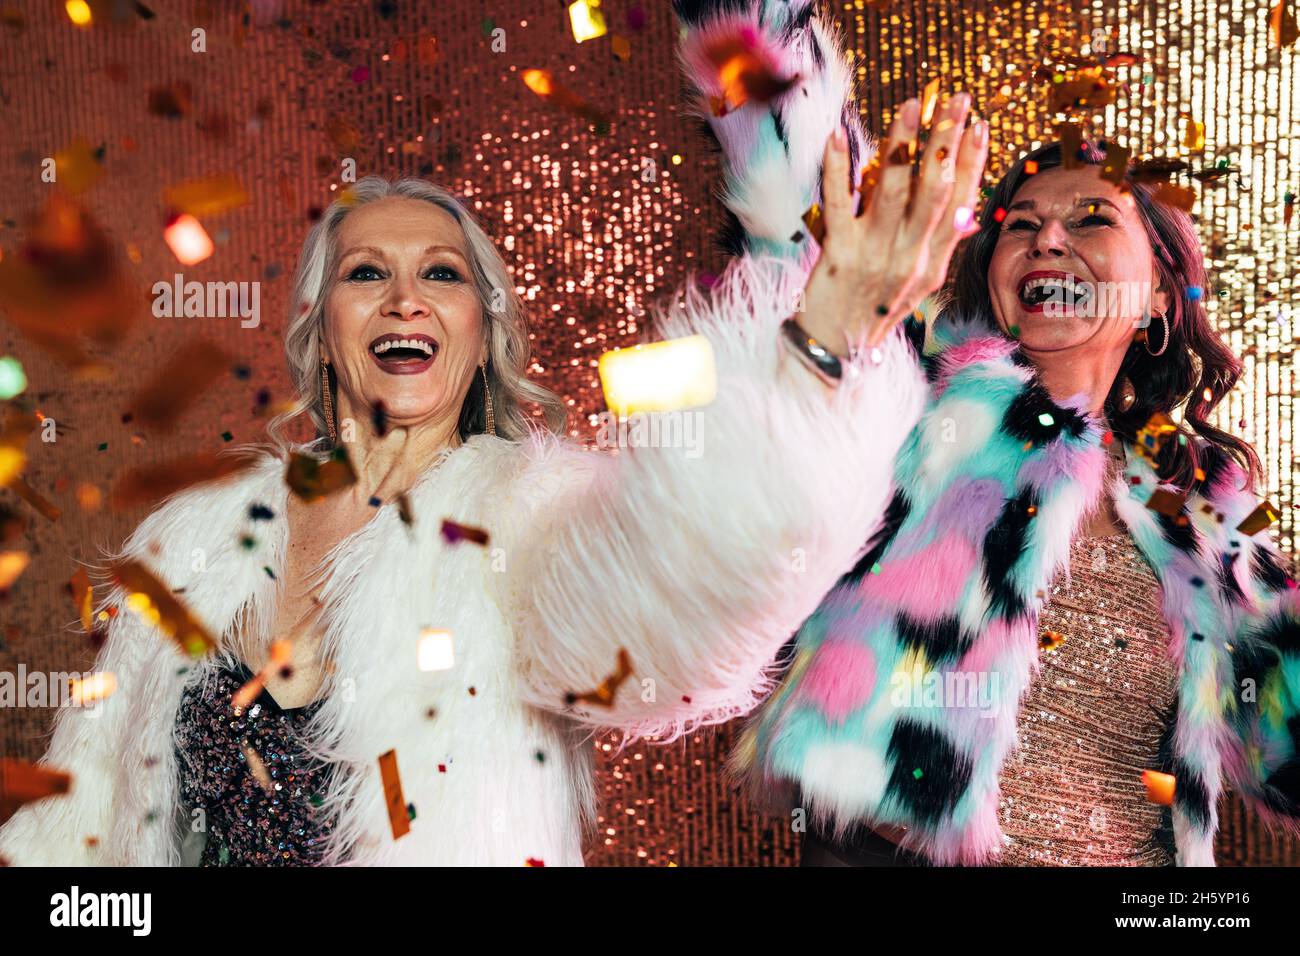 Zwei fröhliche ältere Frauen in Pelzmänteln, die unter Konfetti vor glitzerndem Hintergrund tanzen Stockfoto